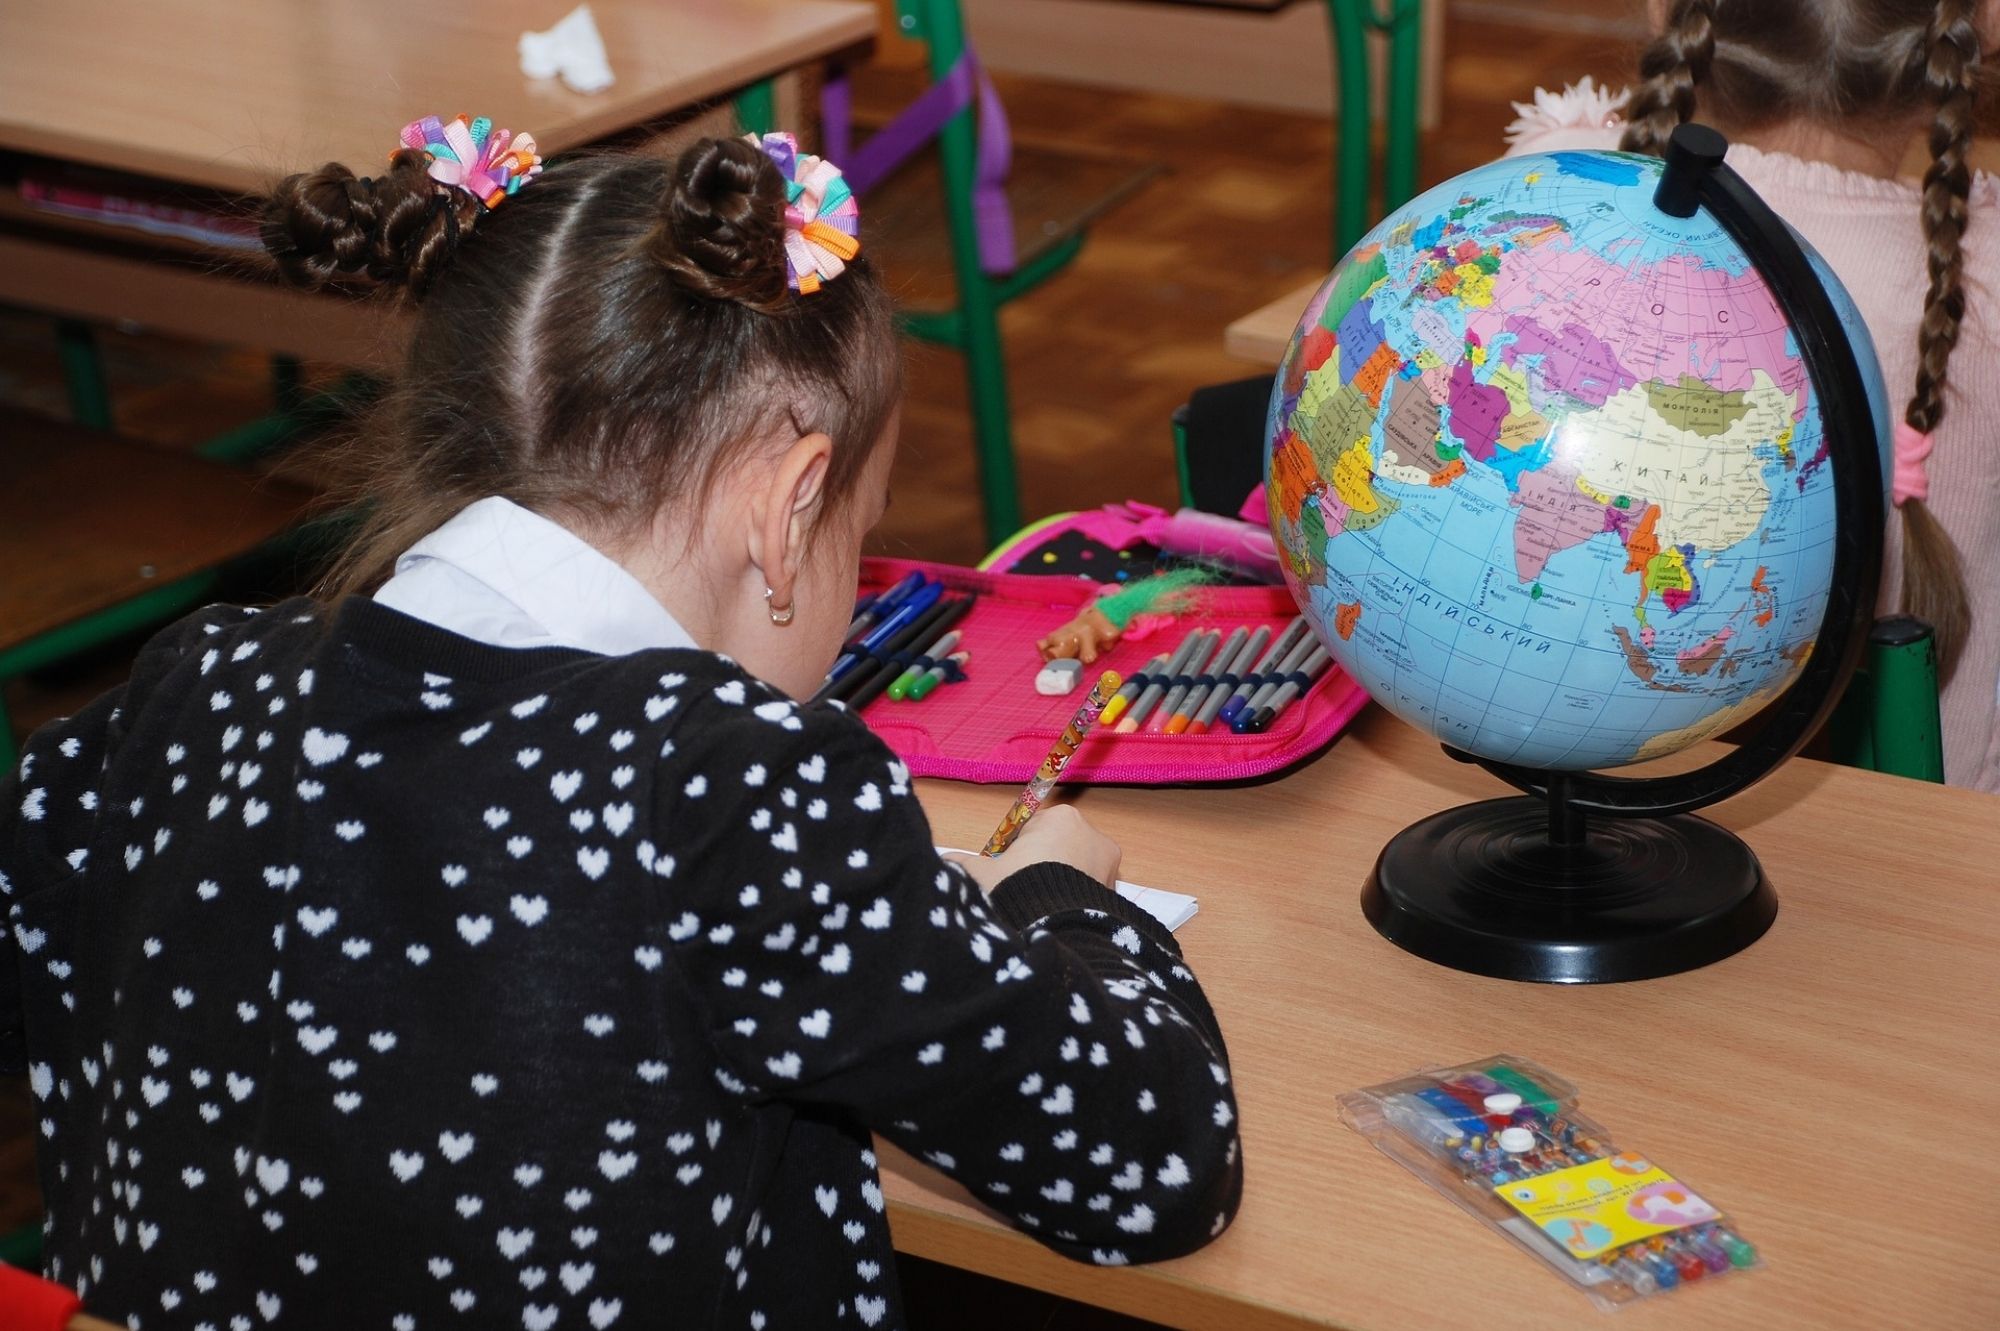 Украинская школа в Таллинне при необходимости сможет принять до 600 учеников. Автор/Источник фото: Pixabay.com.